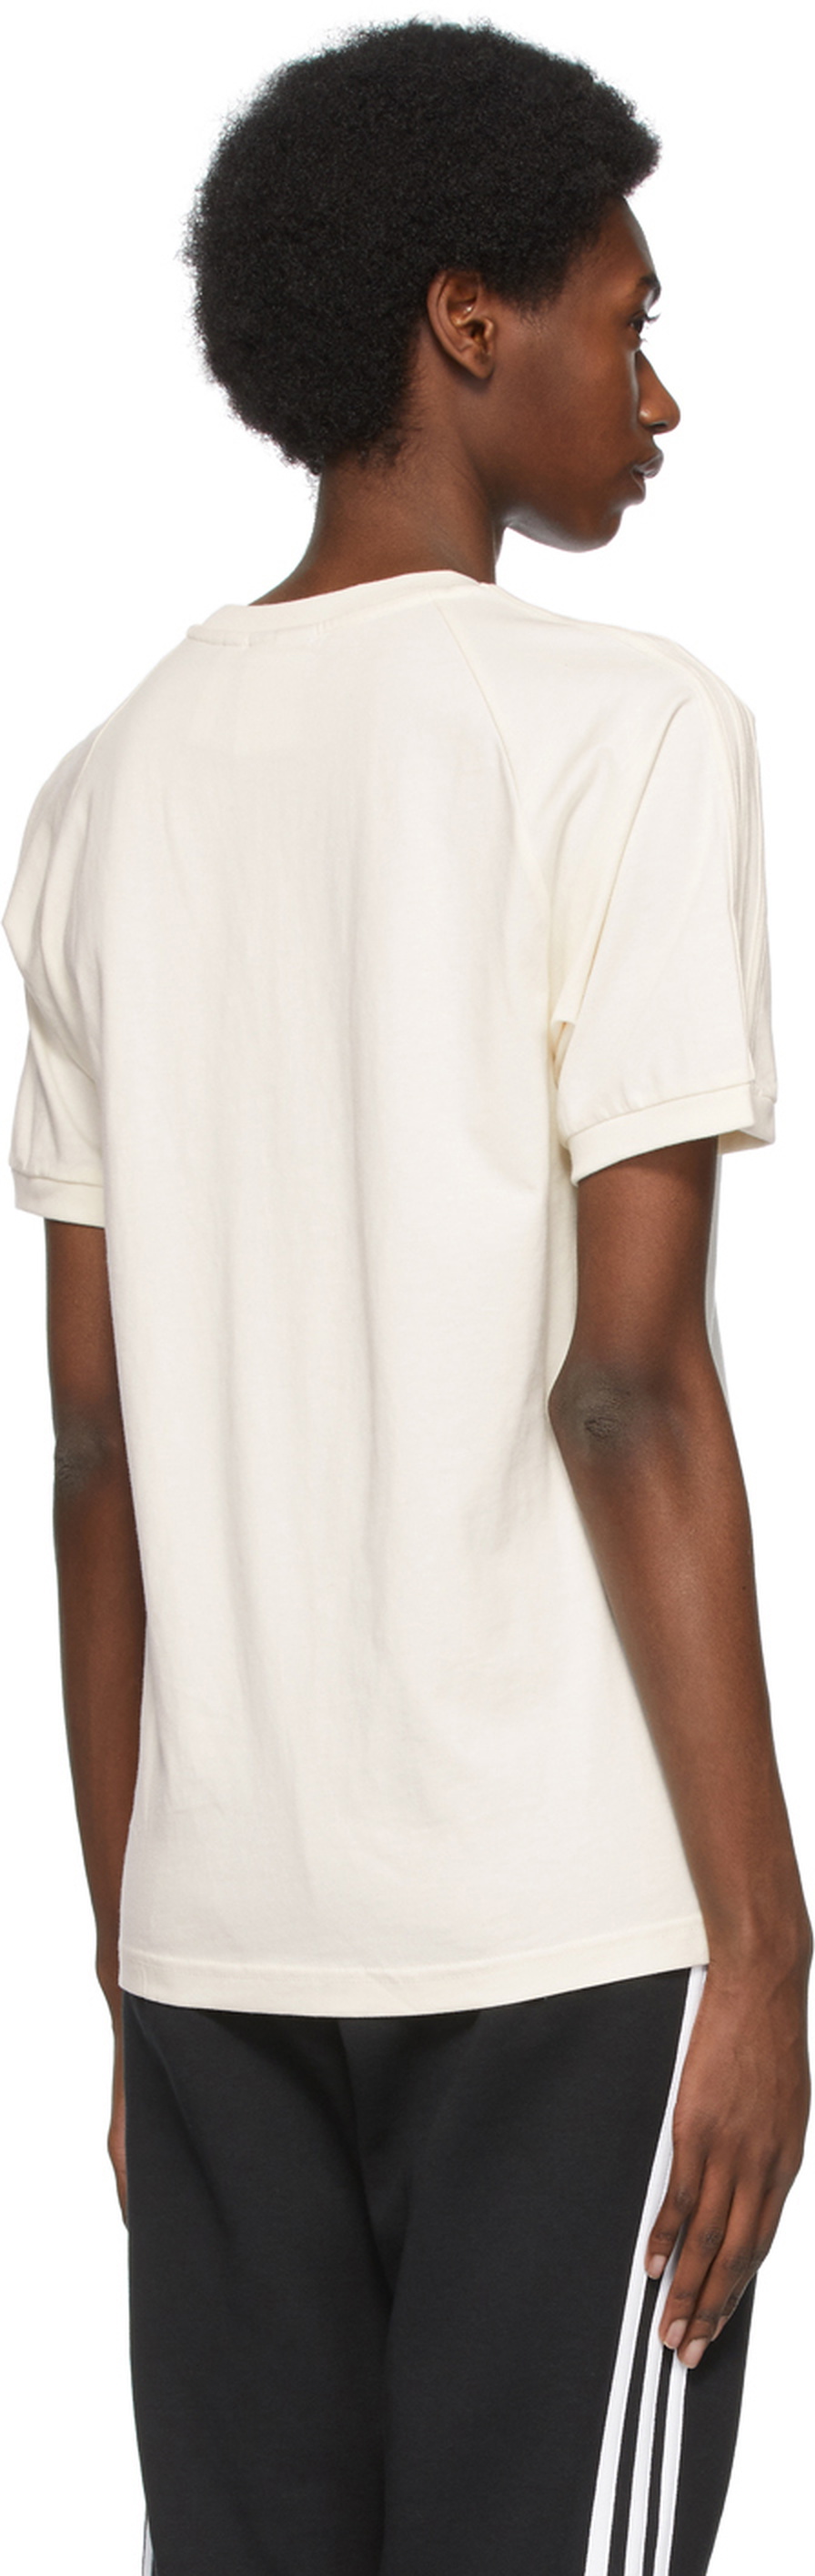 adidas Originals T-Shirt adidas Adicolor 3-Stripes Off-White No-Dye Originals